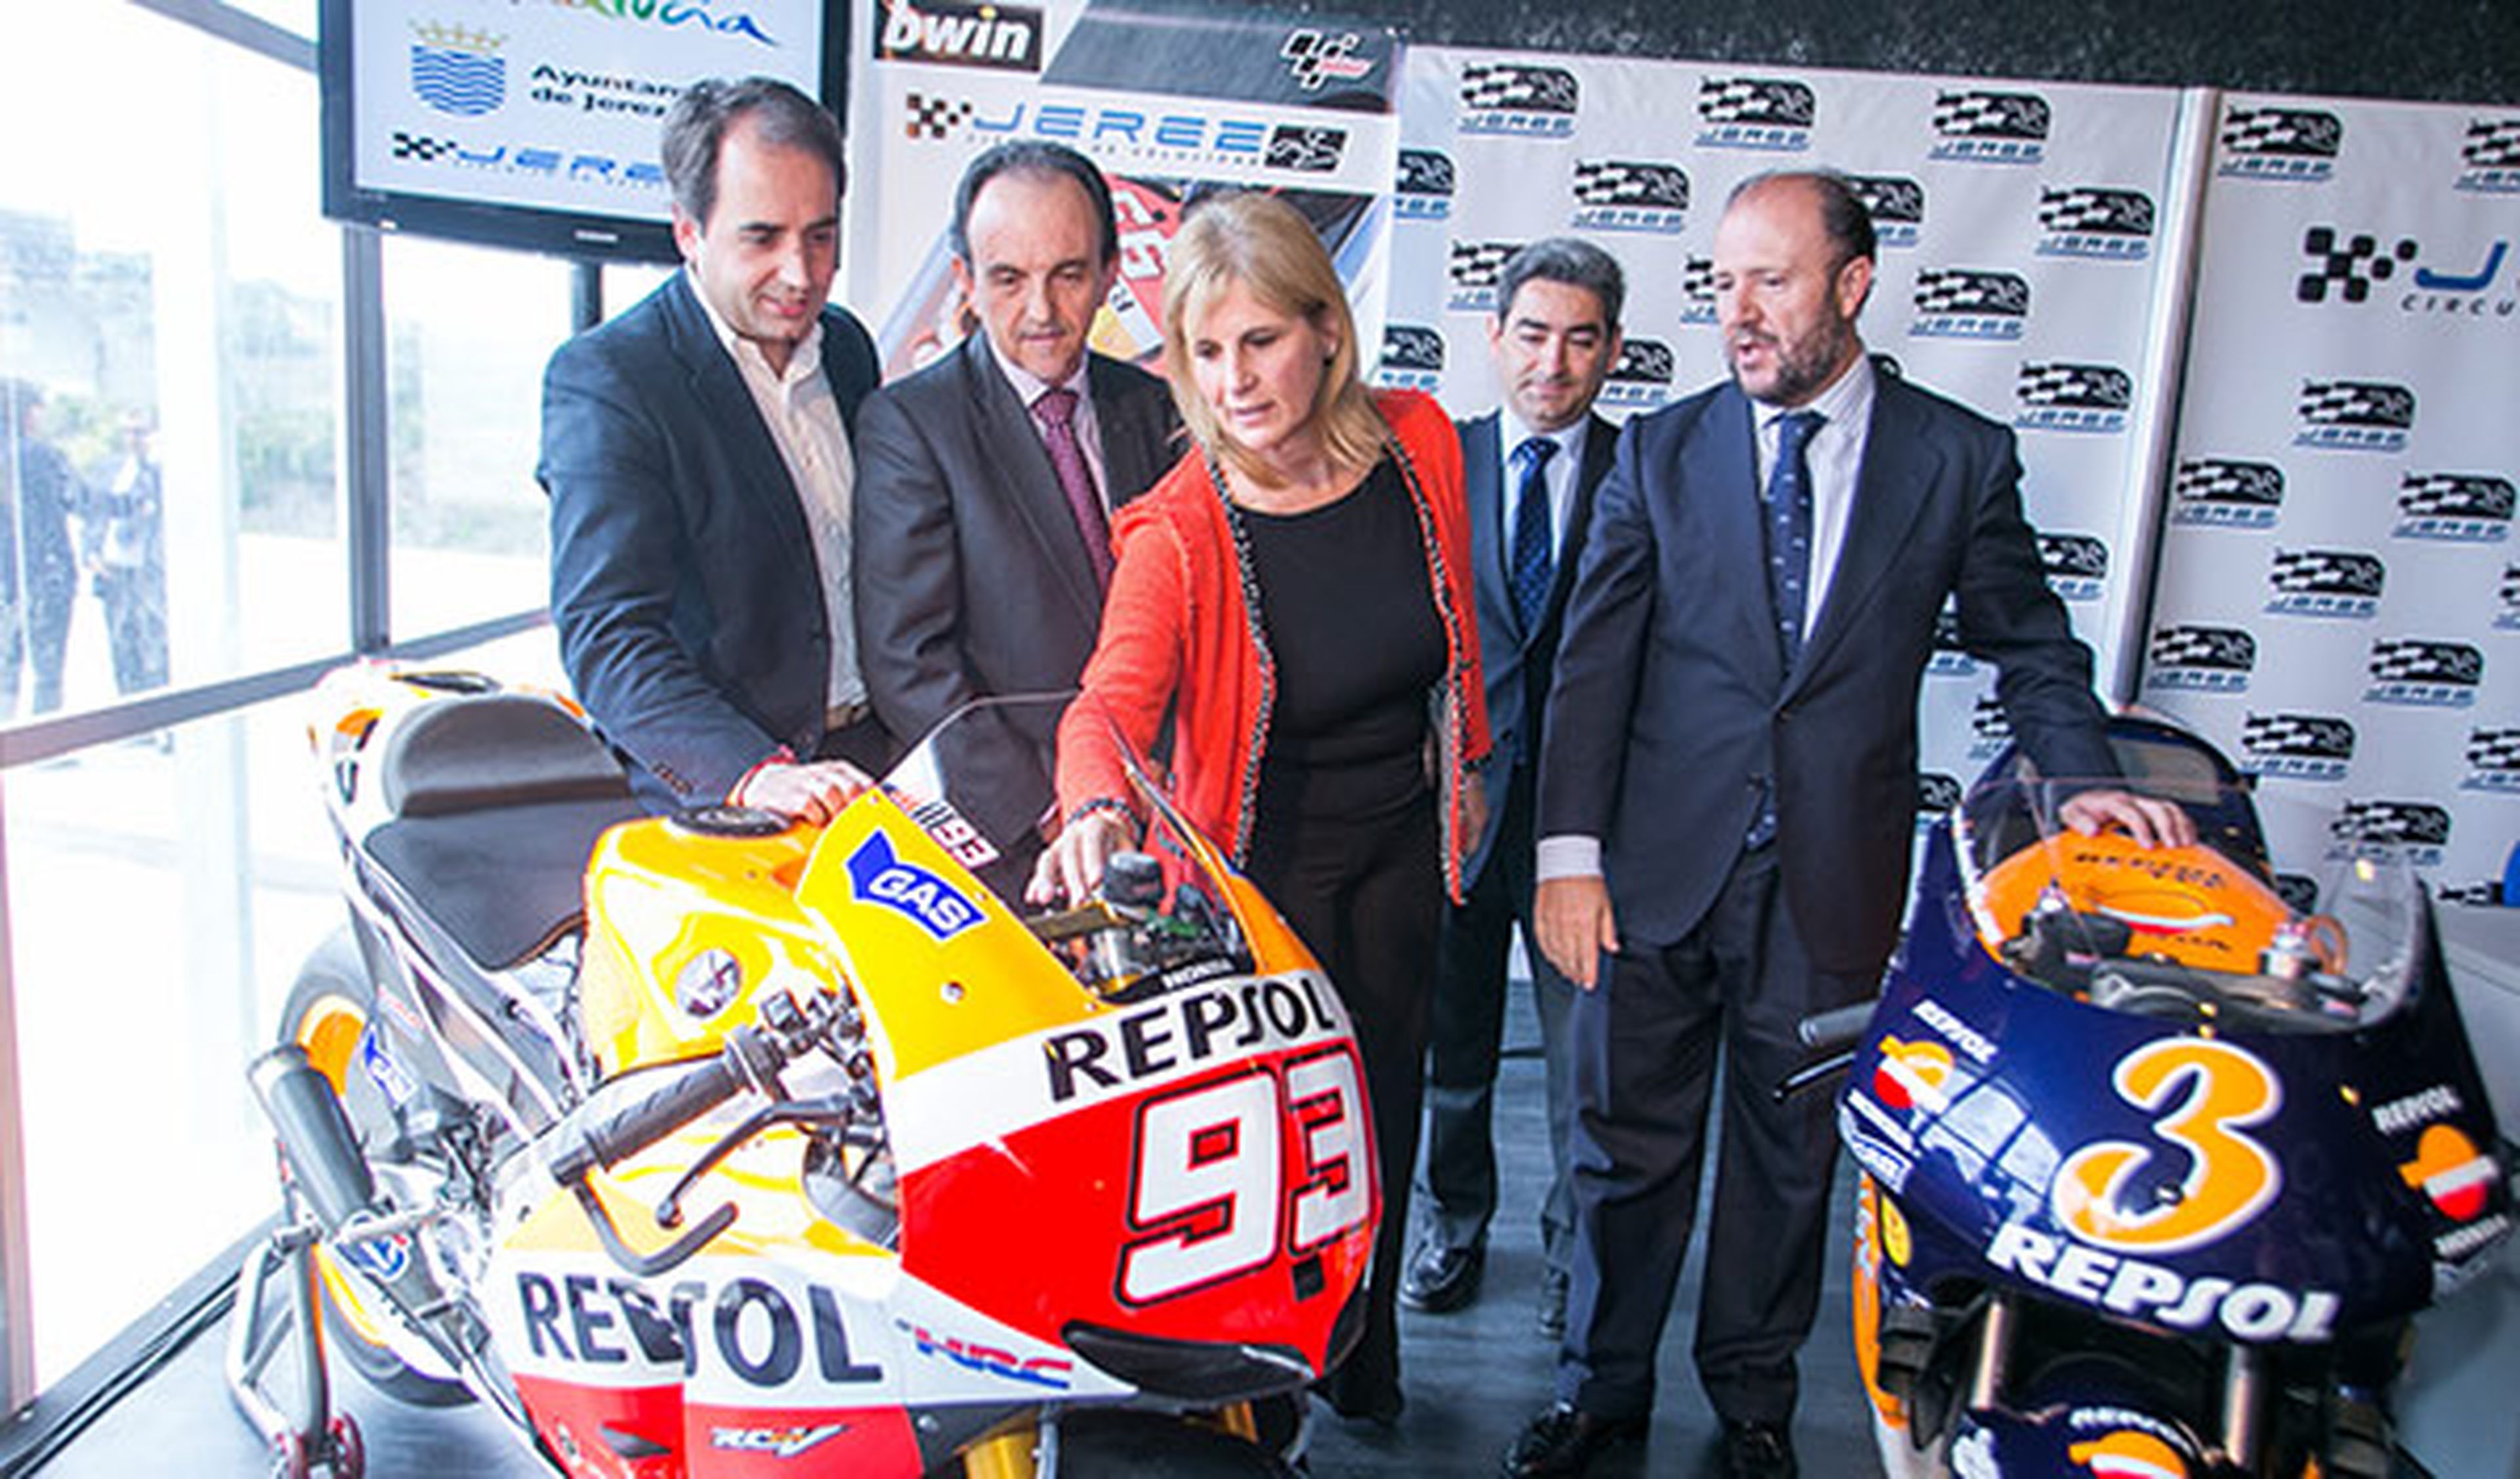 Presentado el GP de España 2014 de Motociclismo en Jerez